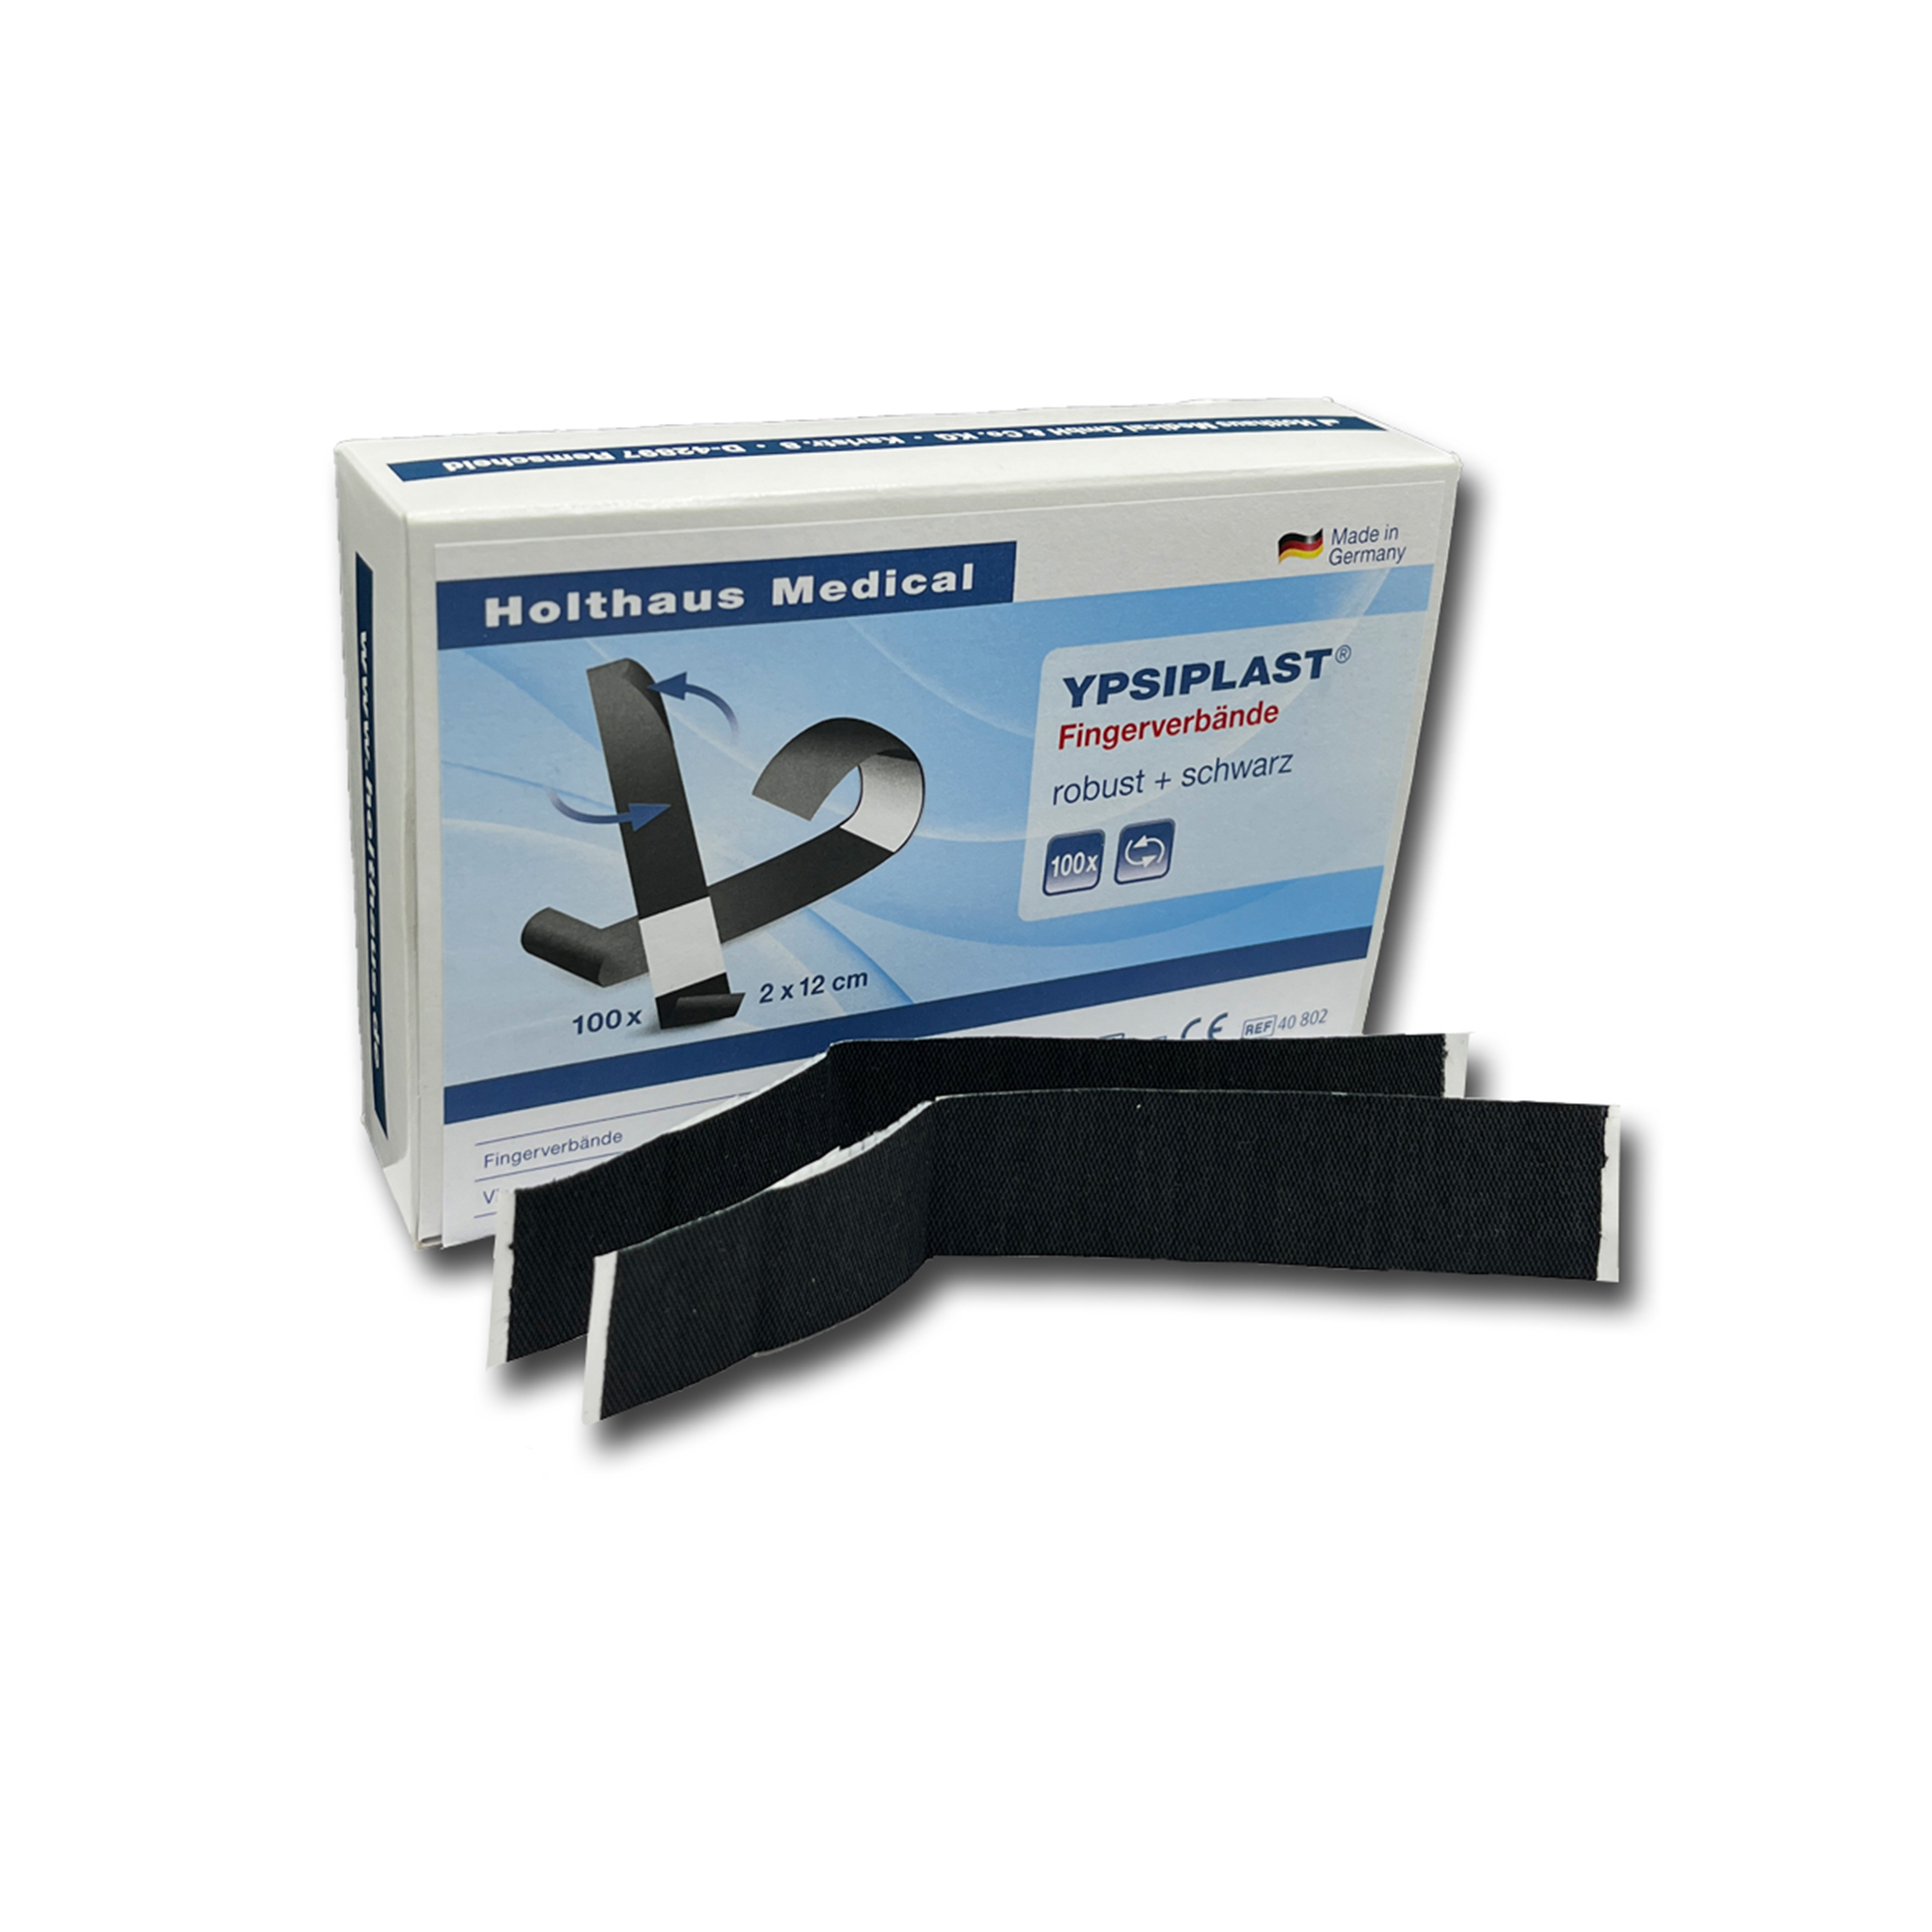 Holthaus Medical YPSIPLAST® Fingerverbände, robust, schwarz, 100 Stück, 2 x 12cm